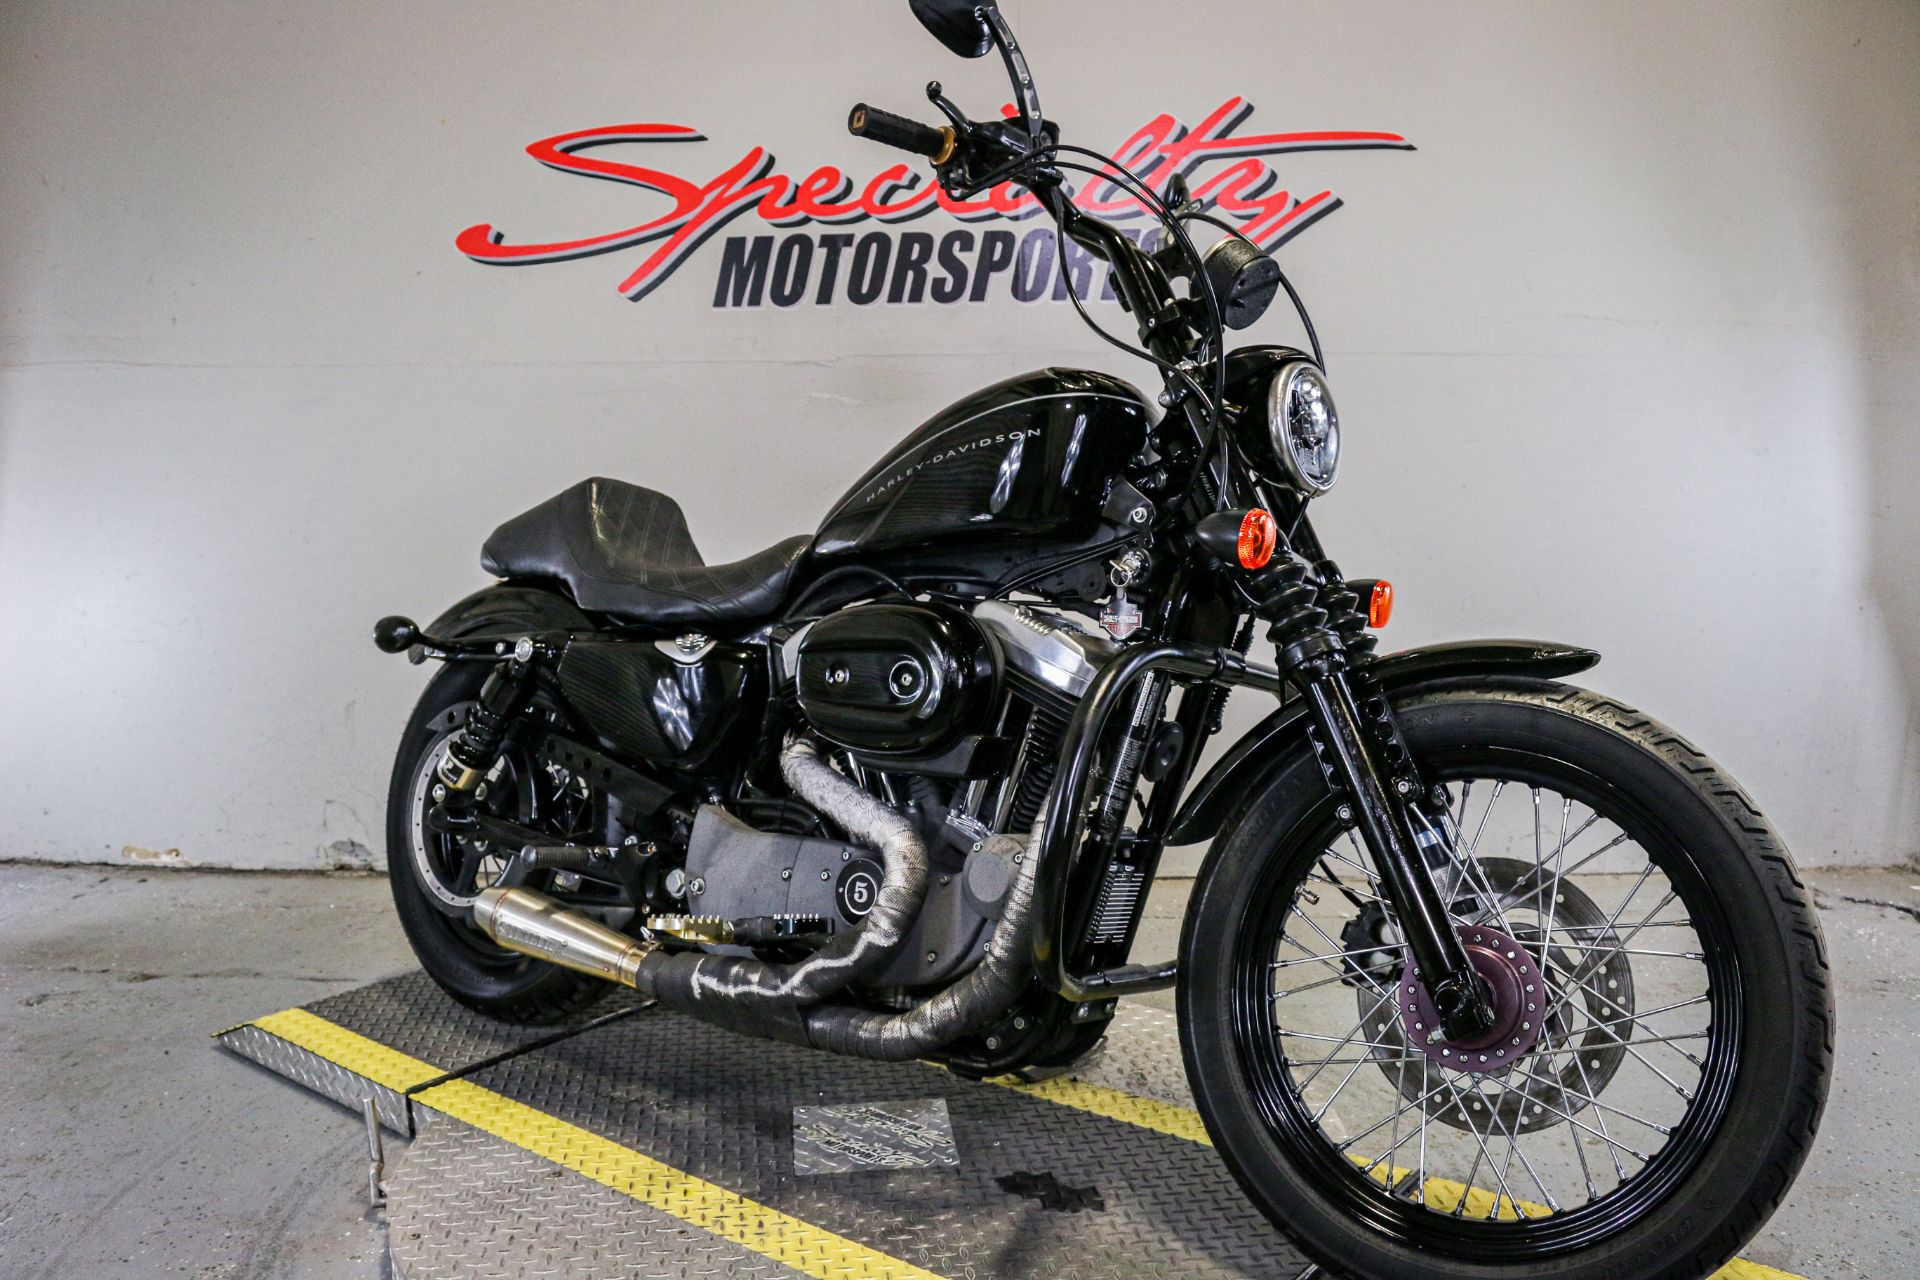 2008 Harley-Davidson Sportster® 1200 Nightster® in Sacramento, California - Photo 7